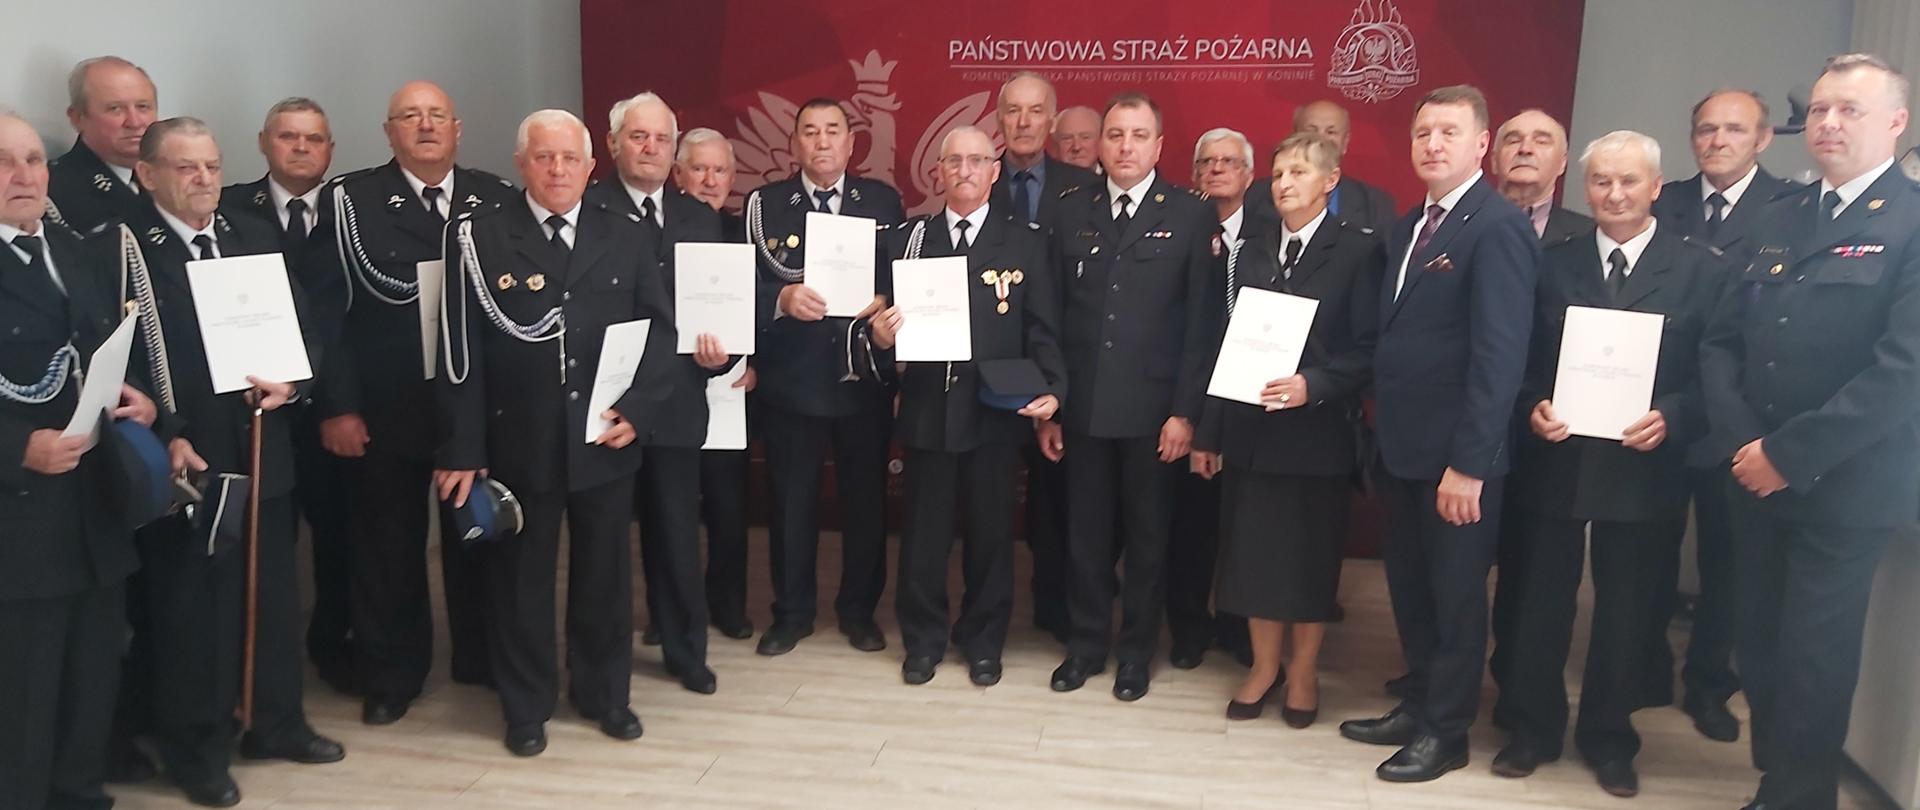 Zdjęcie przedstawia Posła na Sejm RP, komendantów oraz druhów OSP, którzy otrzymali decyzje o przyznaniu świadczenia ratowniczego. Wszyscy stoją w świetlicy przed banerem komendy.